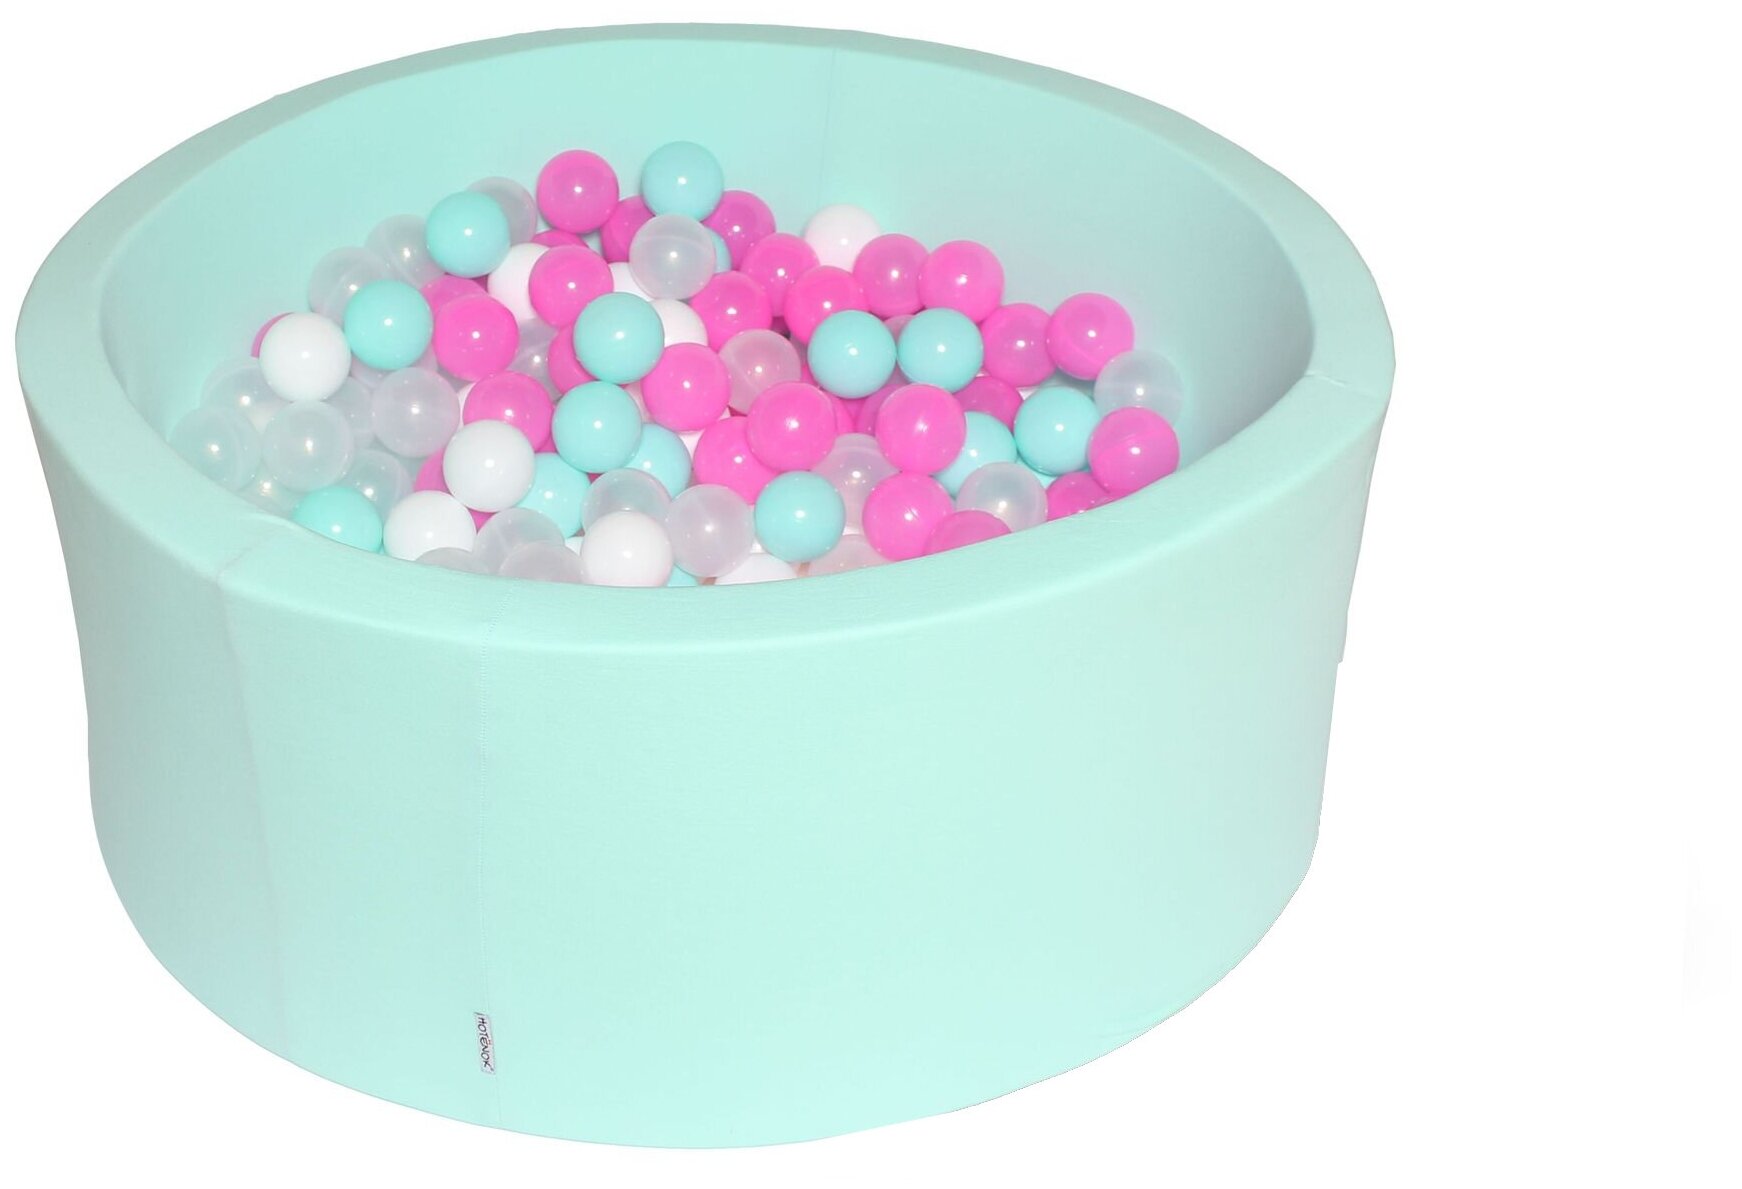 Сухой игровой бассейн "Клубничное мороженое" 100х40 см с 200 шариками: мятный, розовый, белый, прозрачный, sbh024